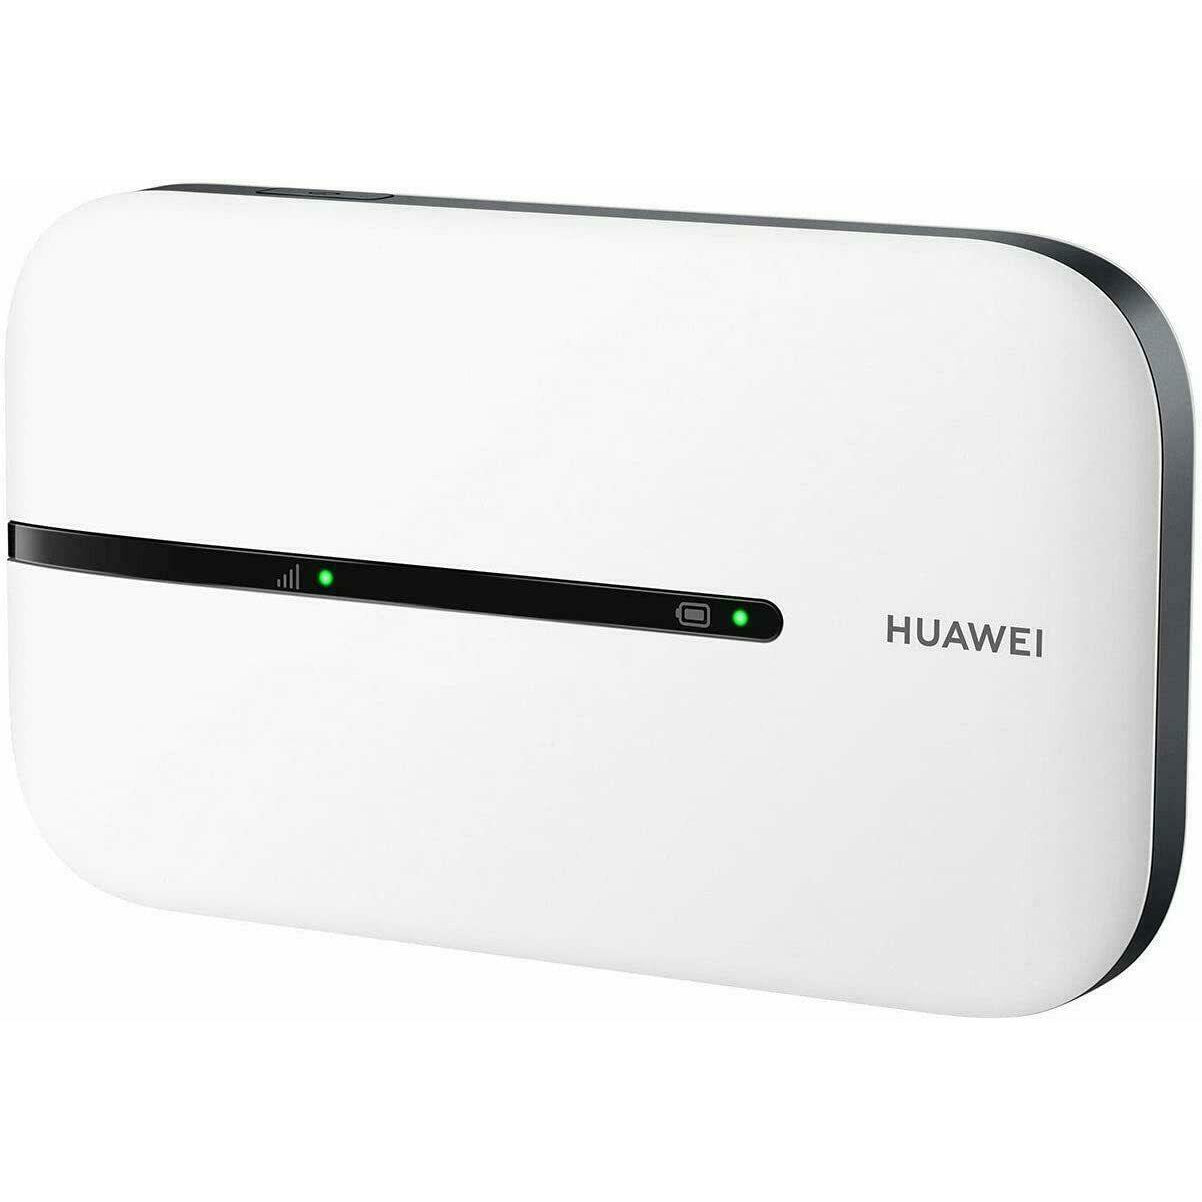 Huawei E5576-320 Portable Mobile WiFi Router Hotspot